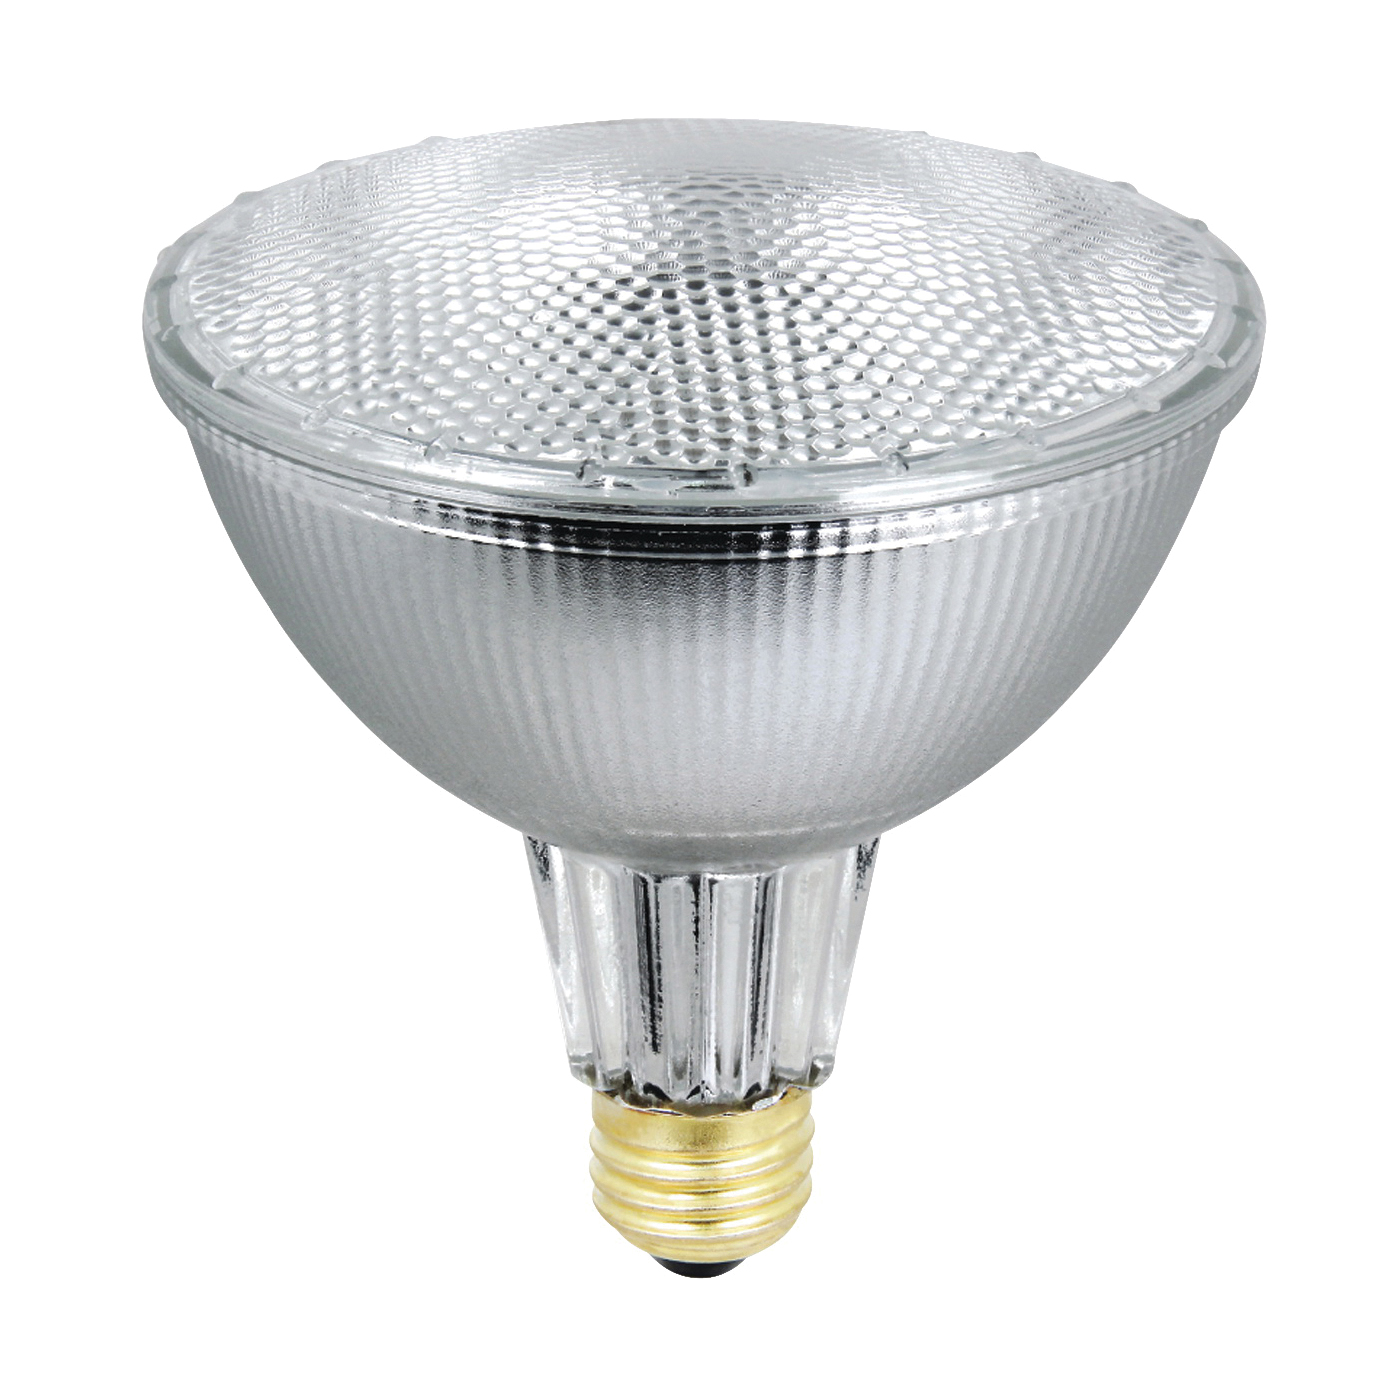 70PAR38/QFL/ES/2 Halogen Bulb, 70 W, Medium E26 Lamp Base, PAR38 Lamp, Soft White Light, 1305 Lumens